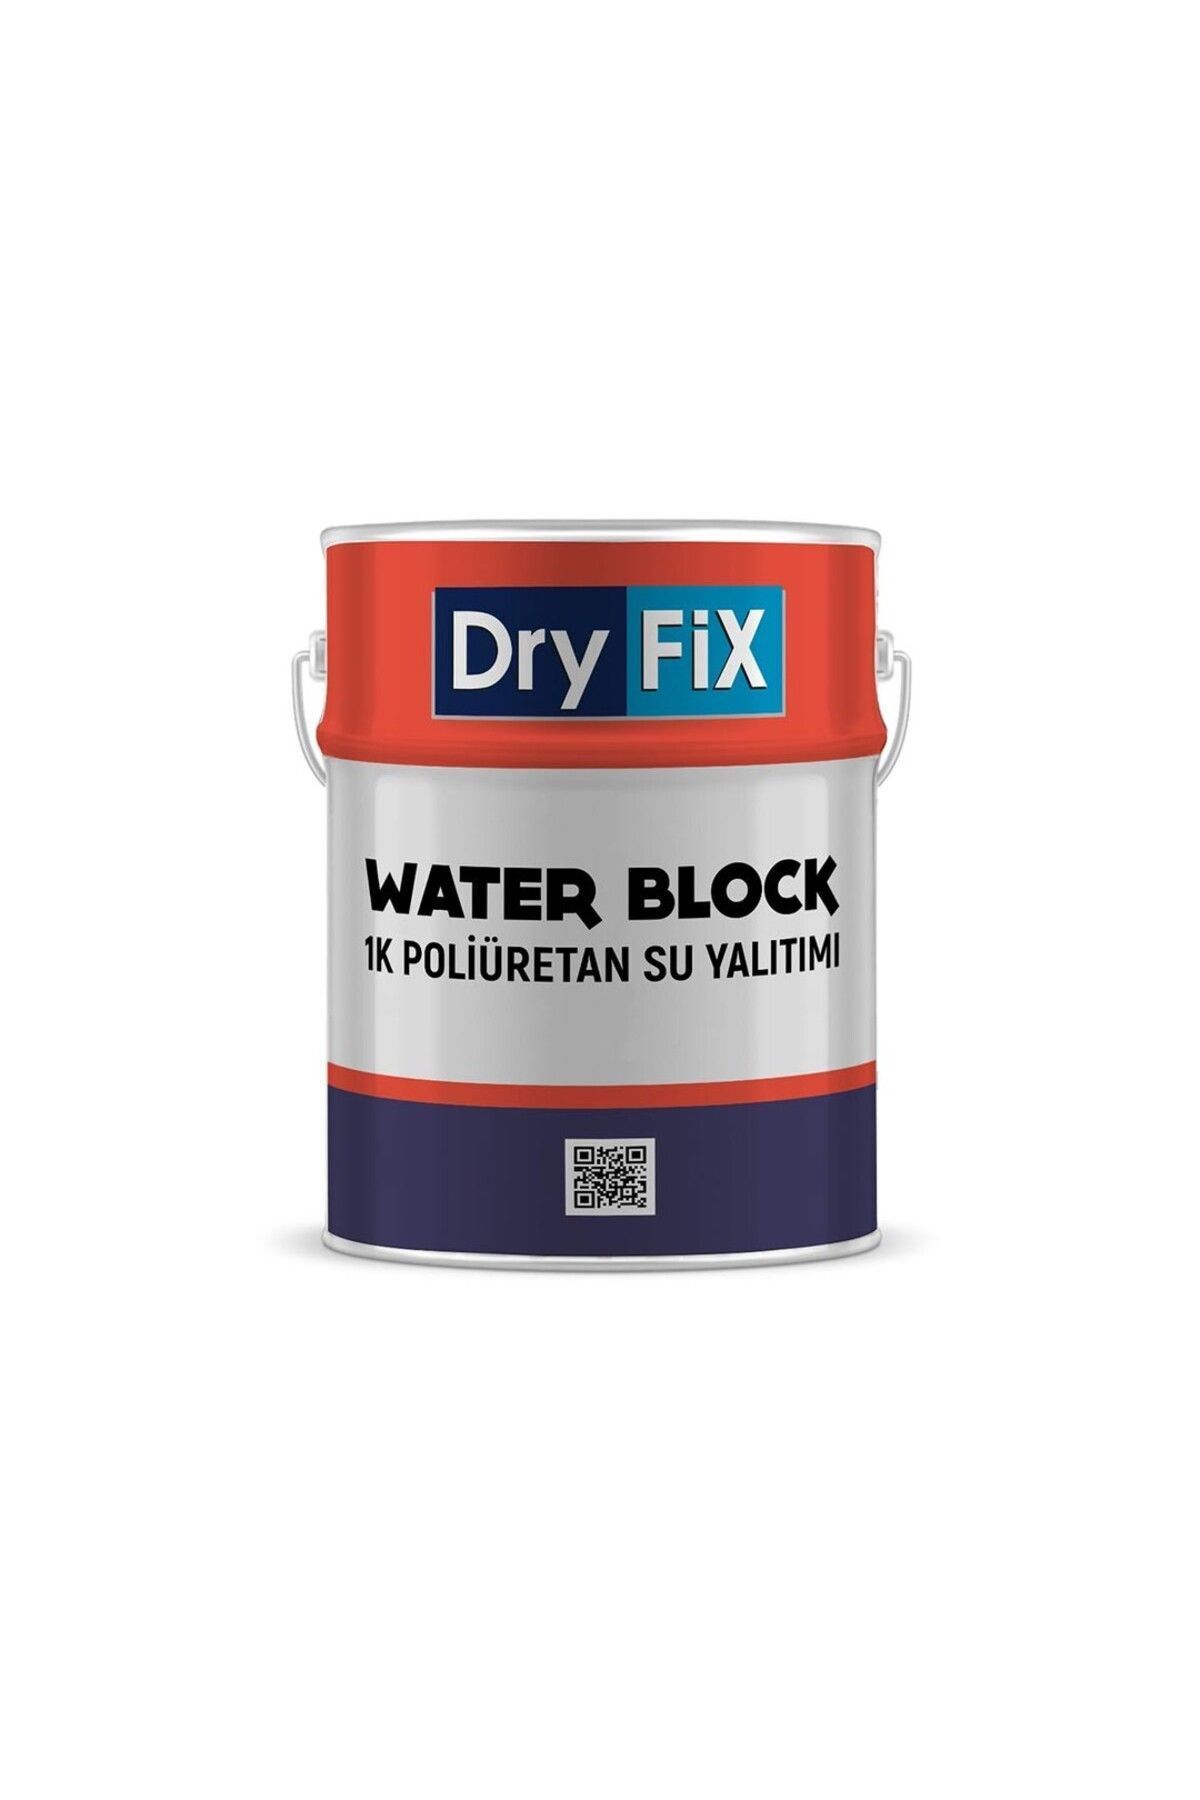 Dryfix 1k Poliüretan Su Yalıtımı | Water Block